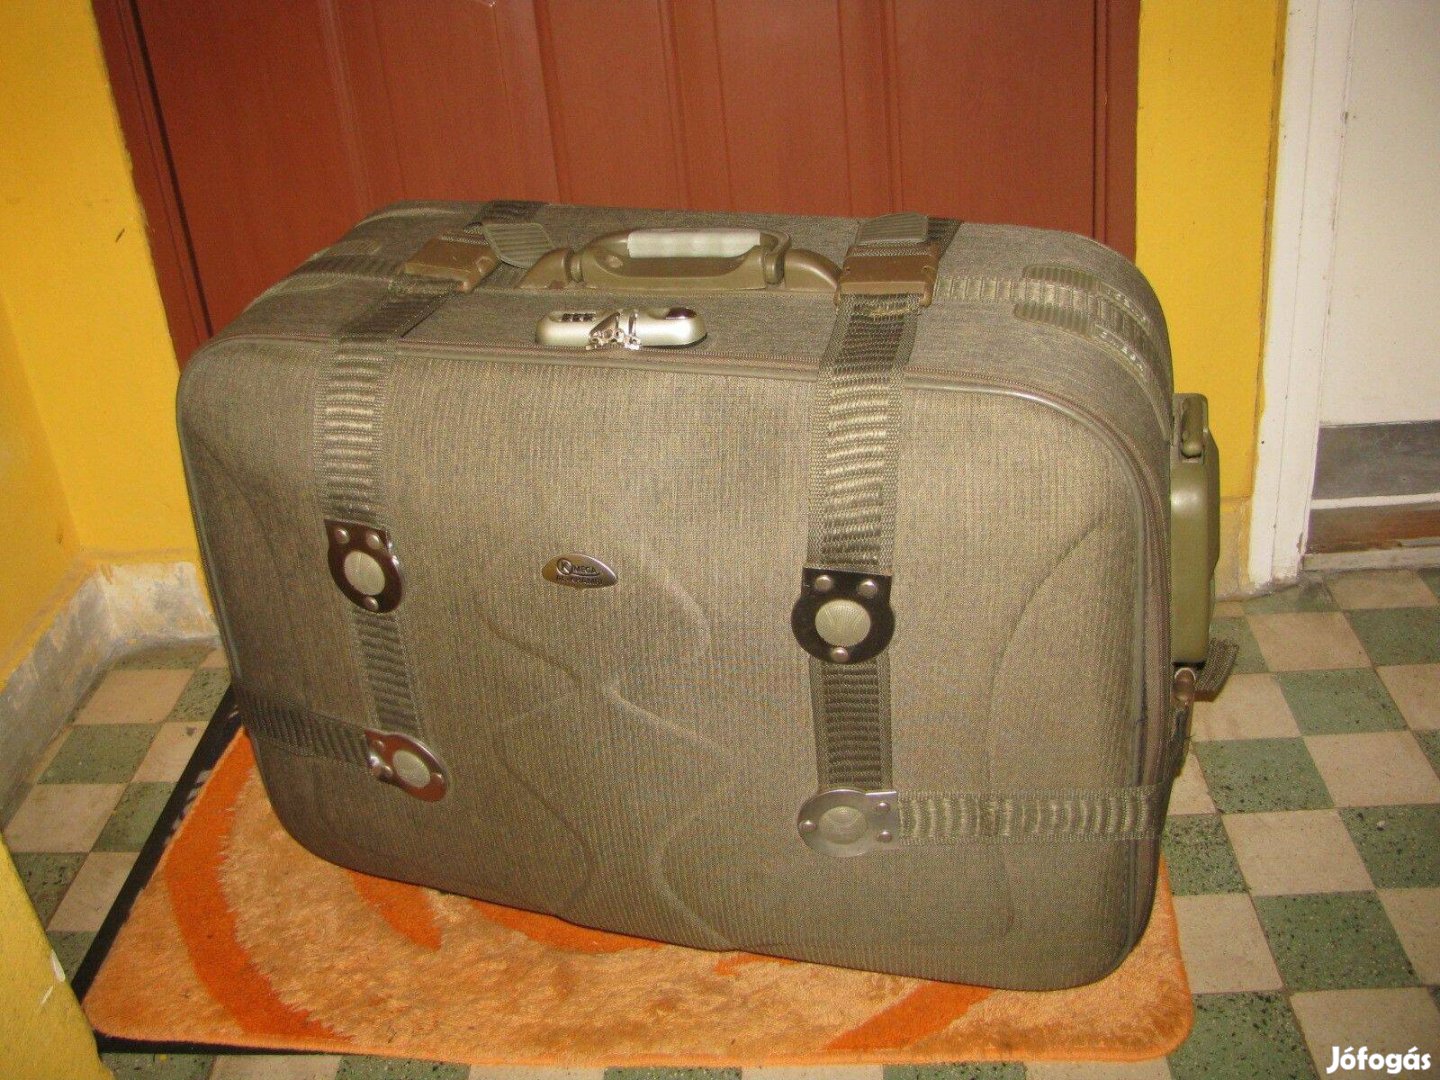 Gurulós bőrönd, 16db görgő, 66x53x30, Omega számzár,újsz.könnyű